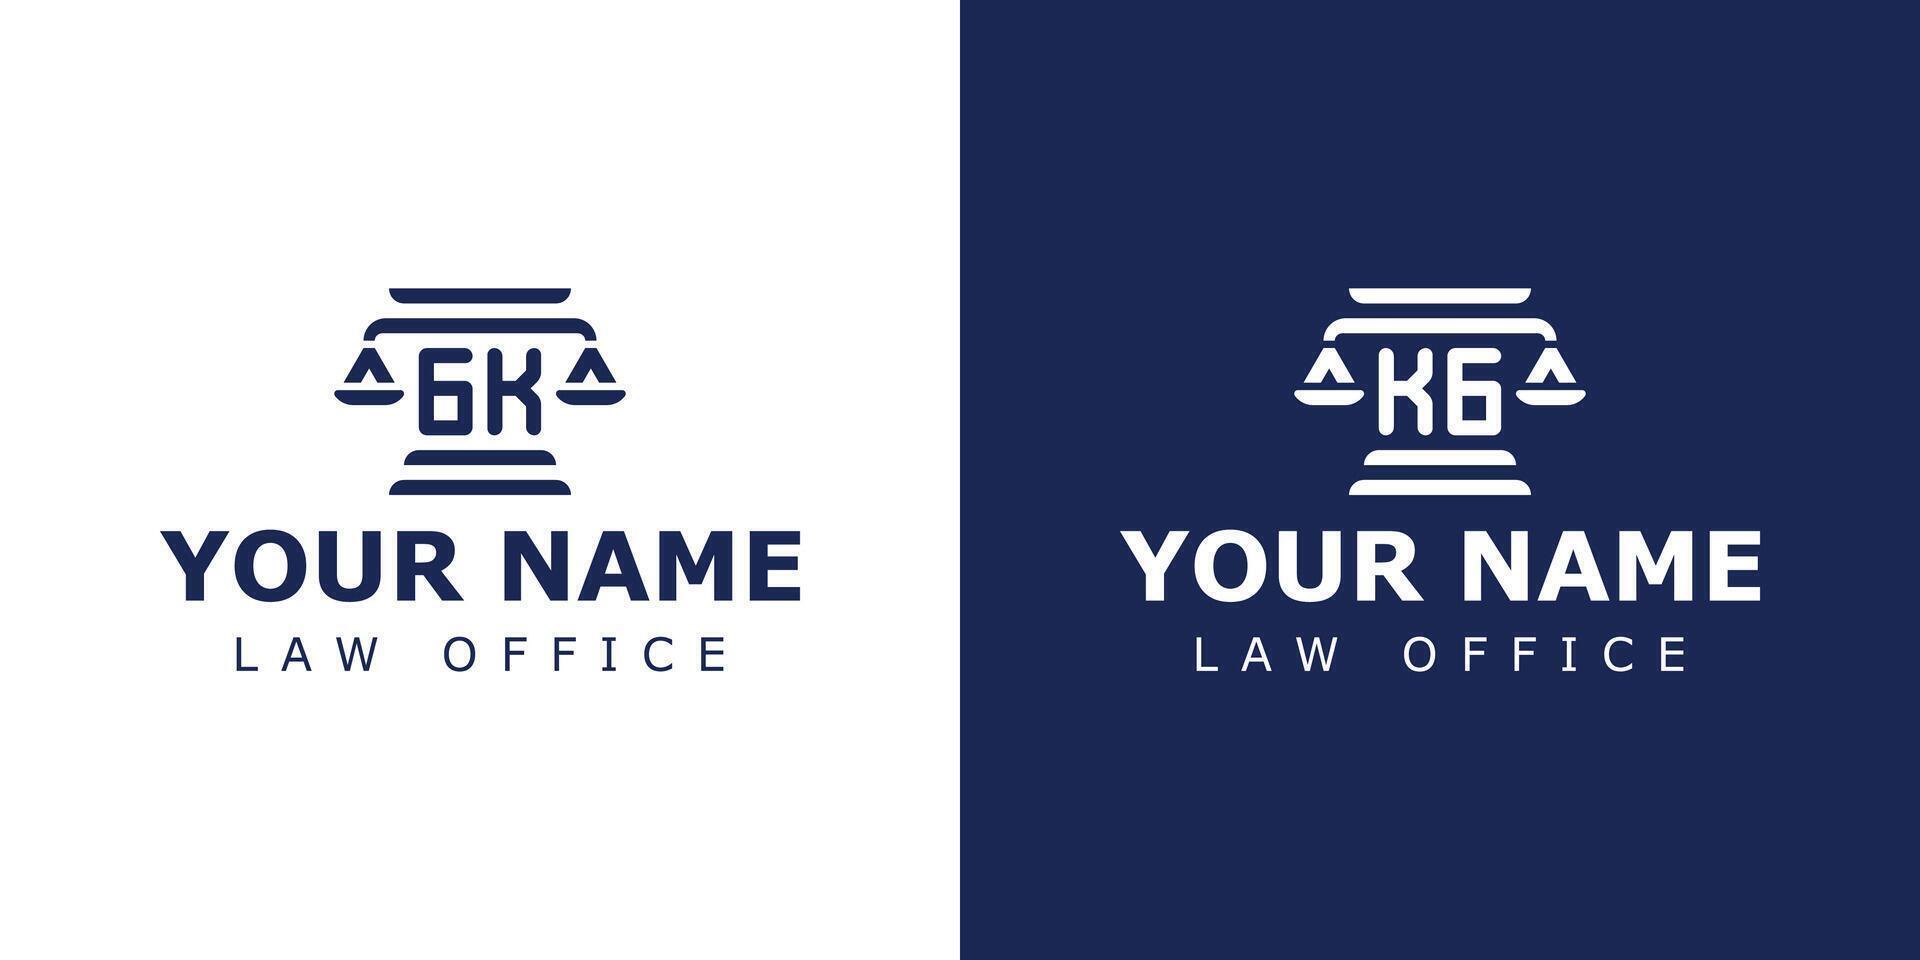 Briefe gk und kg legal Logo, geeignet zum Rechtsanwalt, legal, oder Gerechtigkeit mit gk oder kg Initialen vektor